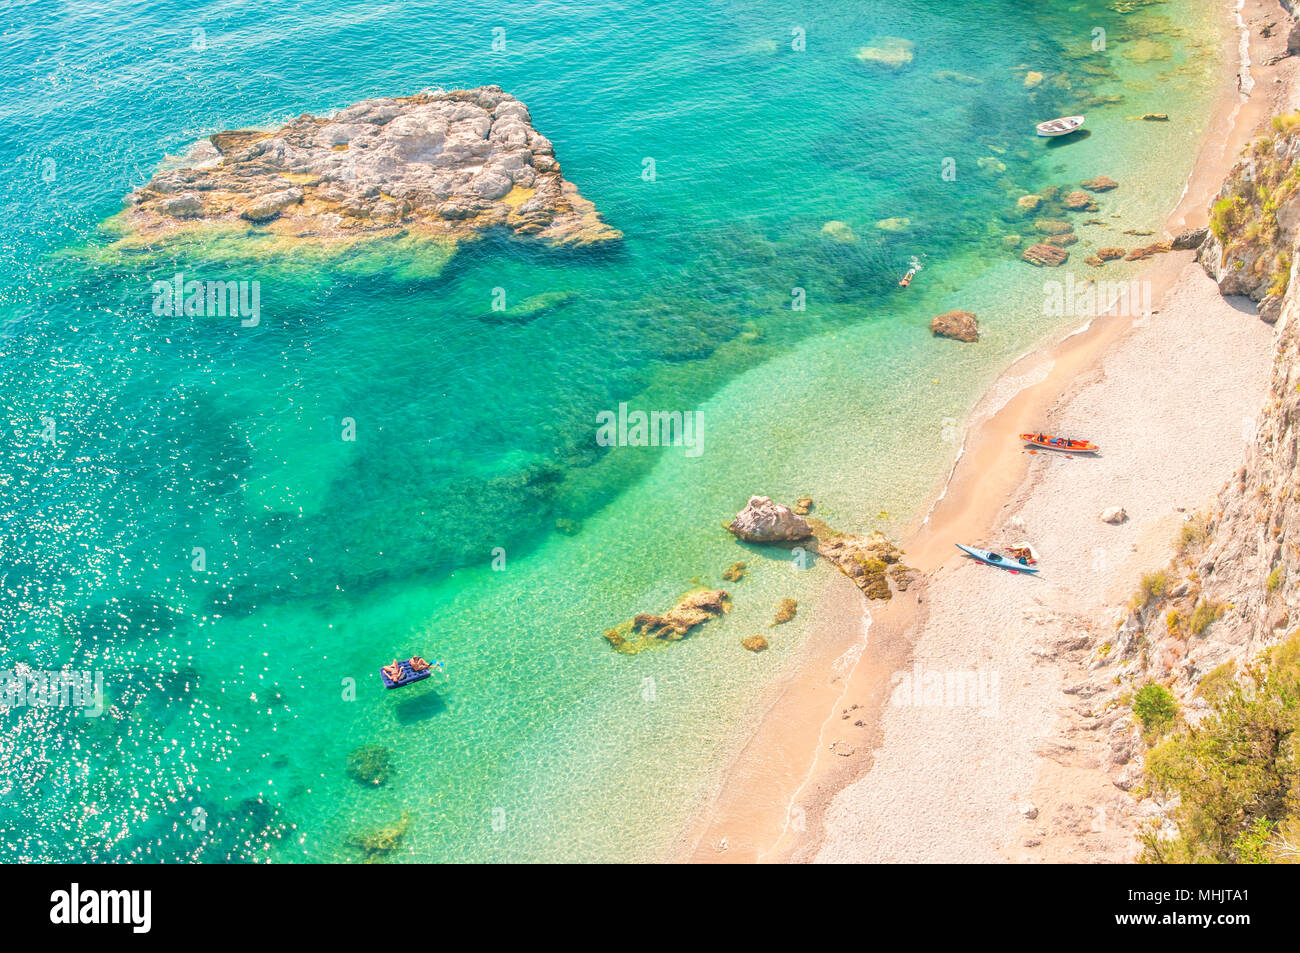 Vue aérienne de plusieurs personnes en appui sur la plage isolée avec des eaux bleu turquoise sur jour d'été chaud et ensoleillé Banque D'Images